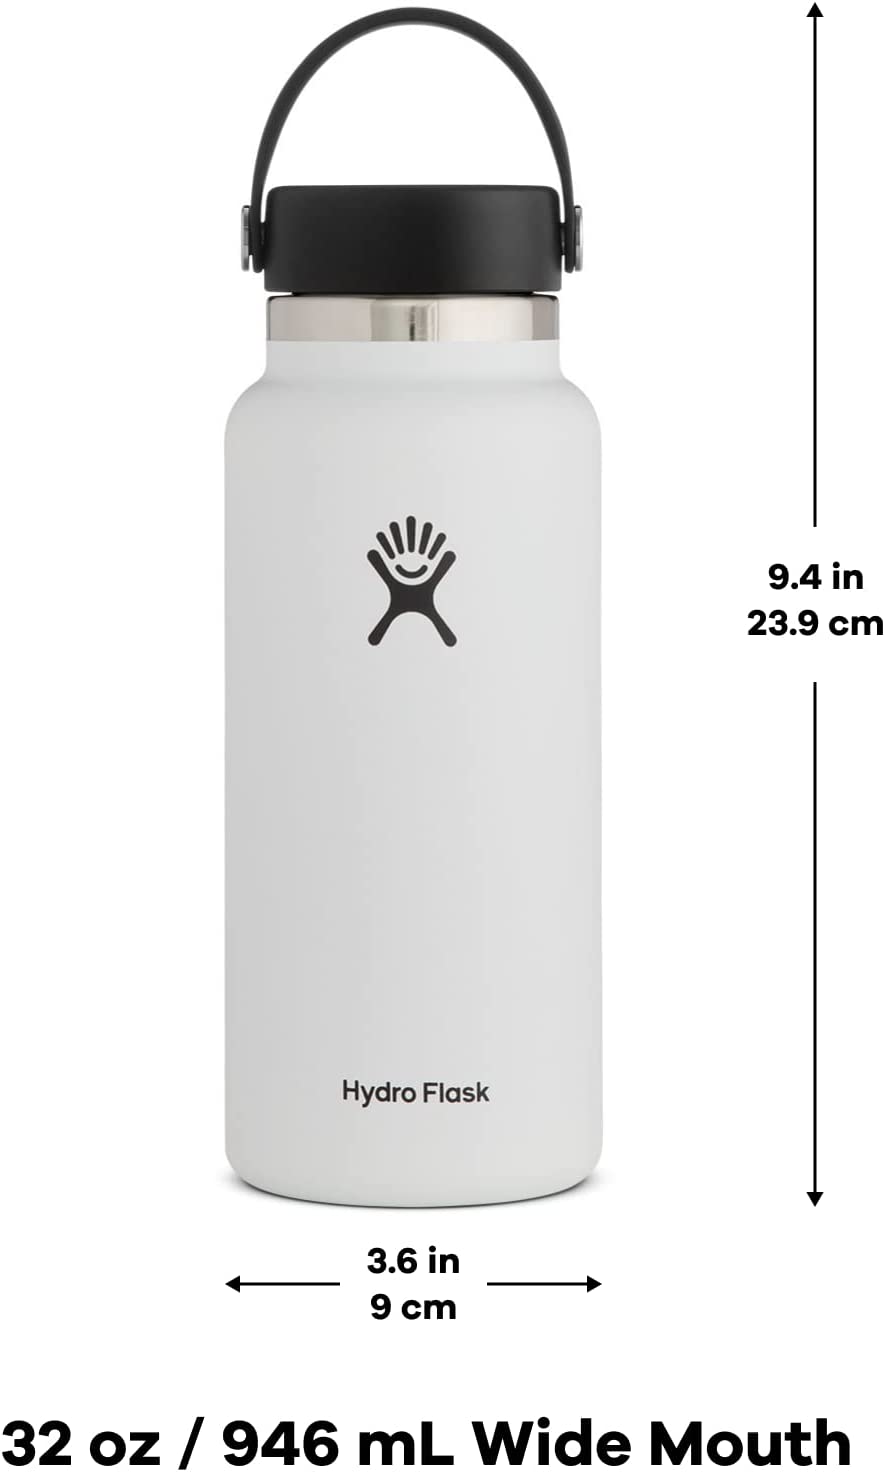 Hydro Flask 32 oz All Around Travel Tumbler (Indigo)